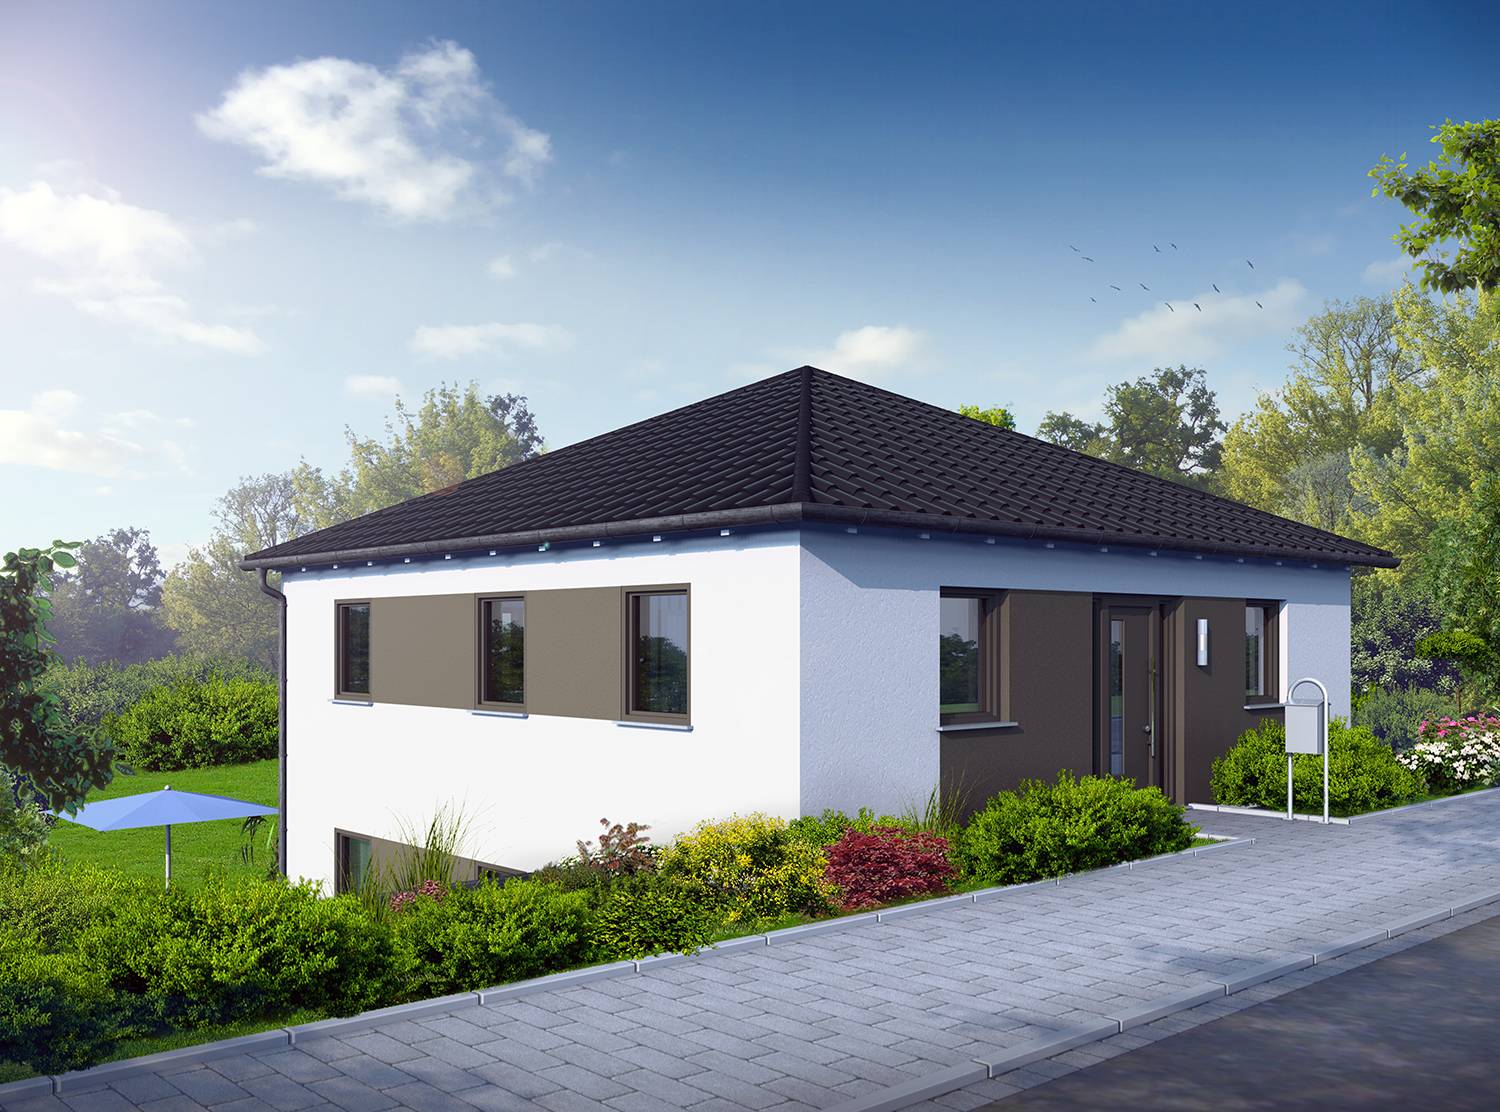 Architekturvisualisierungen Straßen-/Eingangssituation eines am Hang gebauten Einfamilienhauses mit Zeltdach bestellt von der Firma MOSELBAU - SCHLÜSSELFERTIGES BAUEN - GMBH im Jahre 2023.